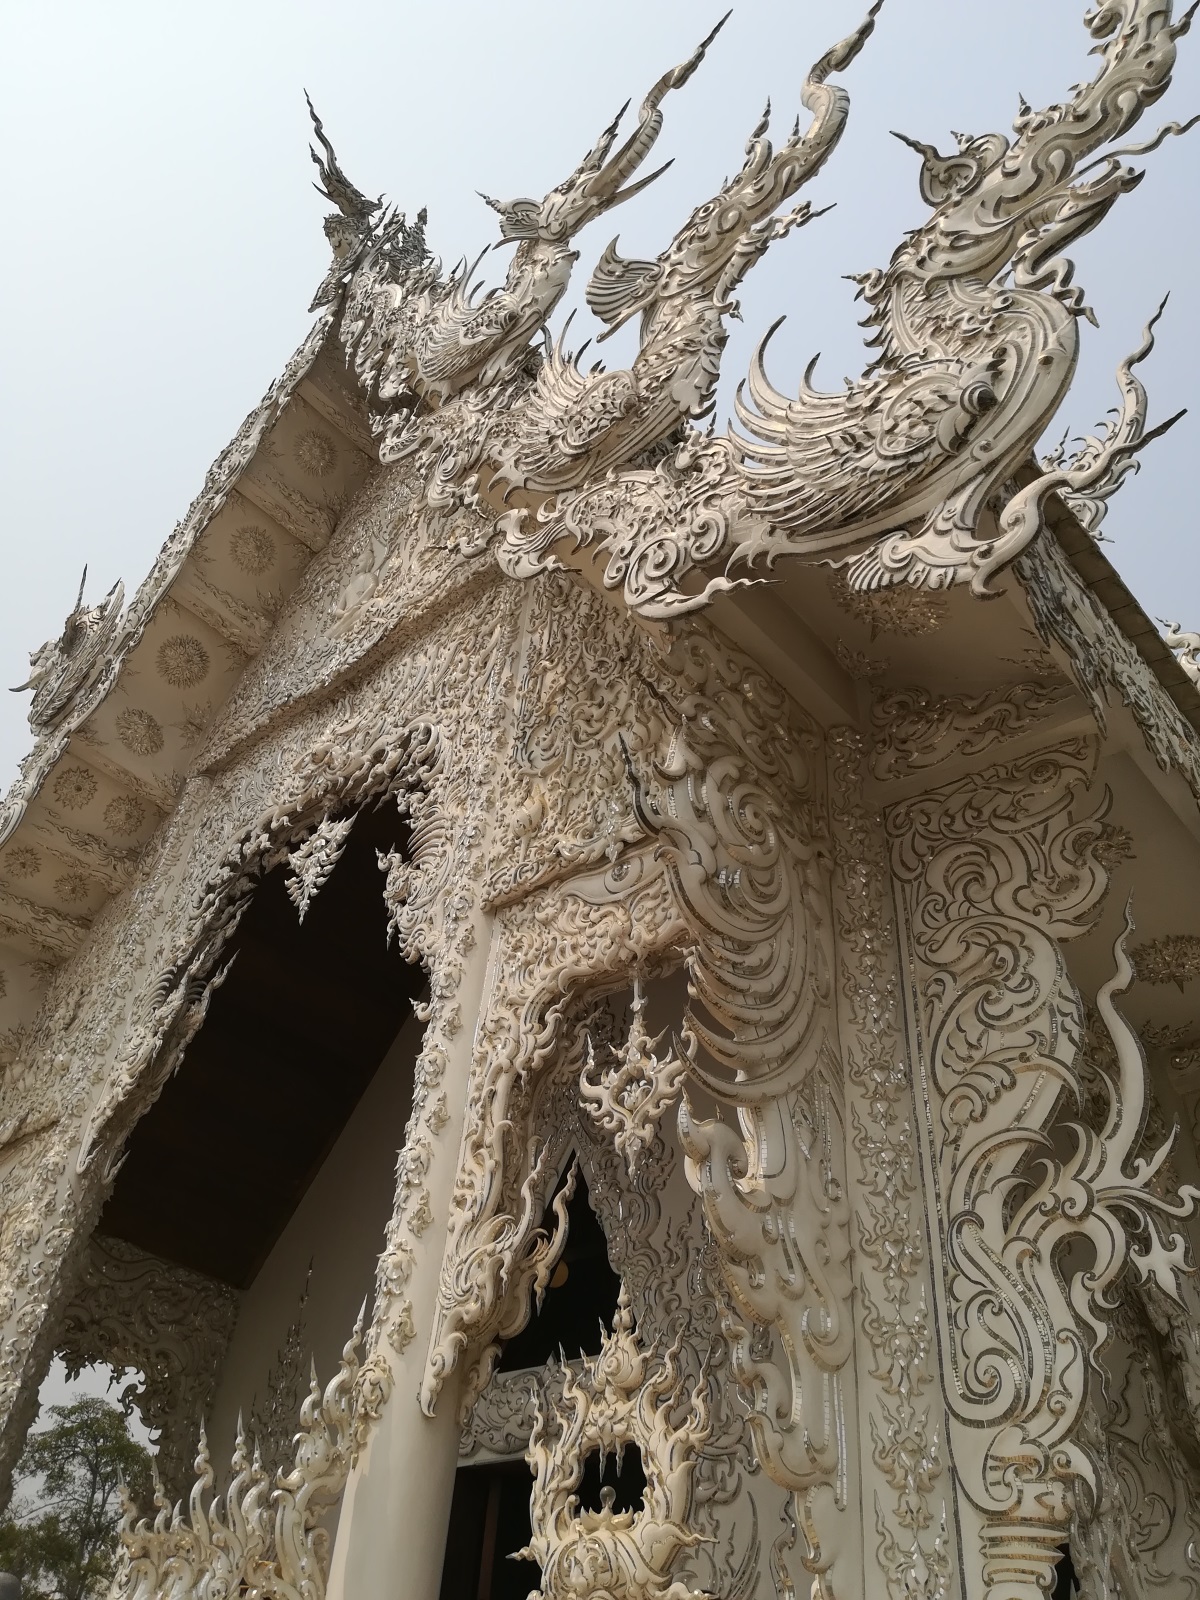 Белият храм или Wat Rong Khun е истинско бижу в провинция Чианг Рай. Храмът е едно от най-посещаваните места в Тайланд и впечатлява с архитектурата си. Сградата е построена по поръчка на известен художник, който искал да остави нещо от себе си на родното си място. Целта му била да построи най-красивия храм в света. Започнал да работи по проекта през 1997 г., заедно със съпругата си. Всяка година нещо ново се добавя по сградата и така тя постоянно се обновява и различава по нещо от предходната година. Около Белия храм могат да се видят всякакви скулптури като чудовища и дракони, а ръцете, които се протягат от двете страни на входа, символизират ада. Според легендата ако ръцете те хванат, докато минаваш по пътеката, значи си грешник. Пътуването на автора до Чианг Рай е спонсорирано от Qatar Airways.